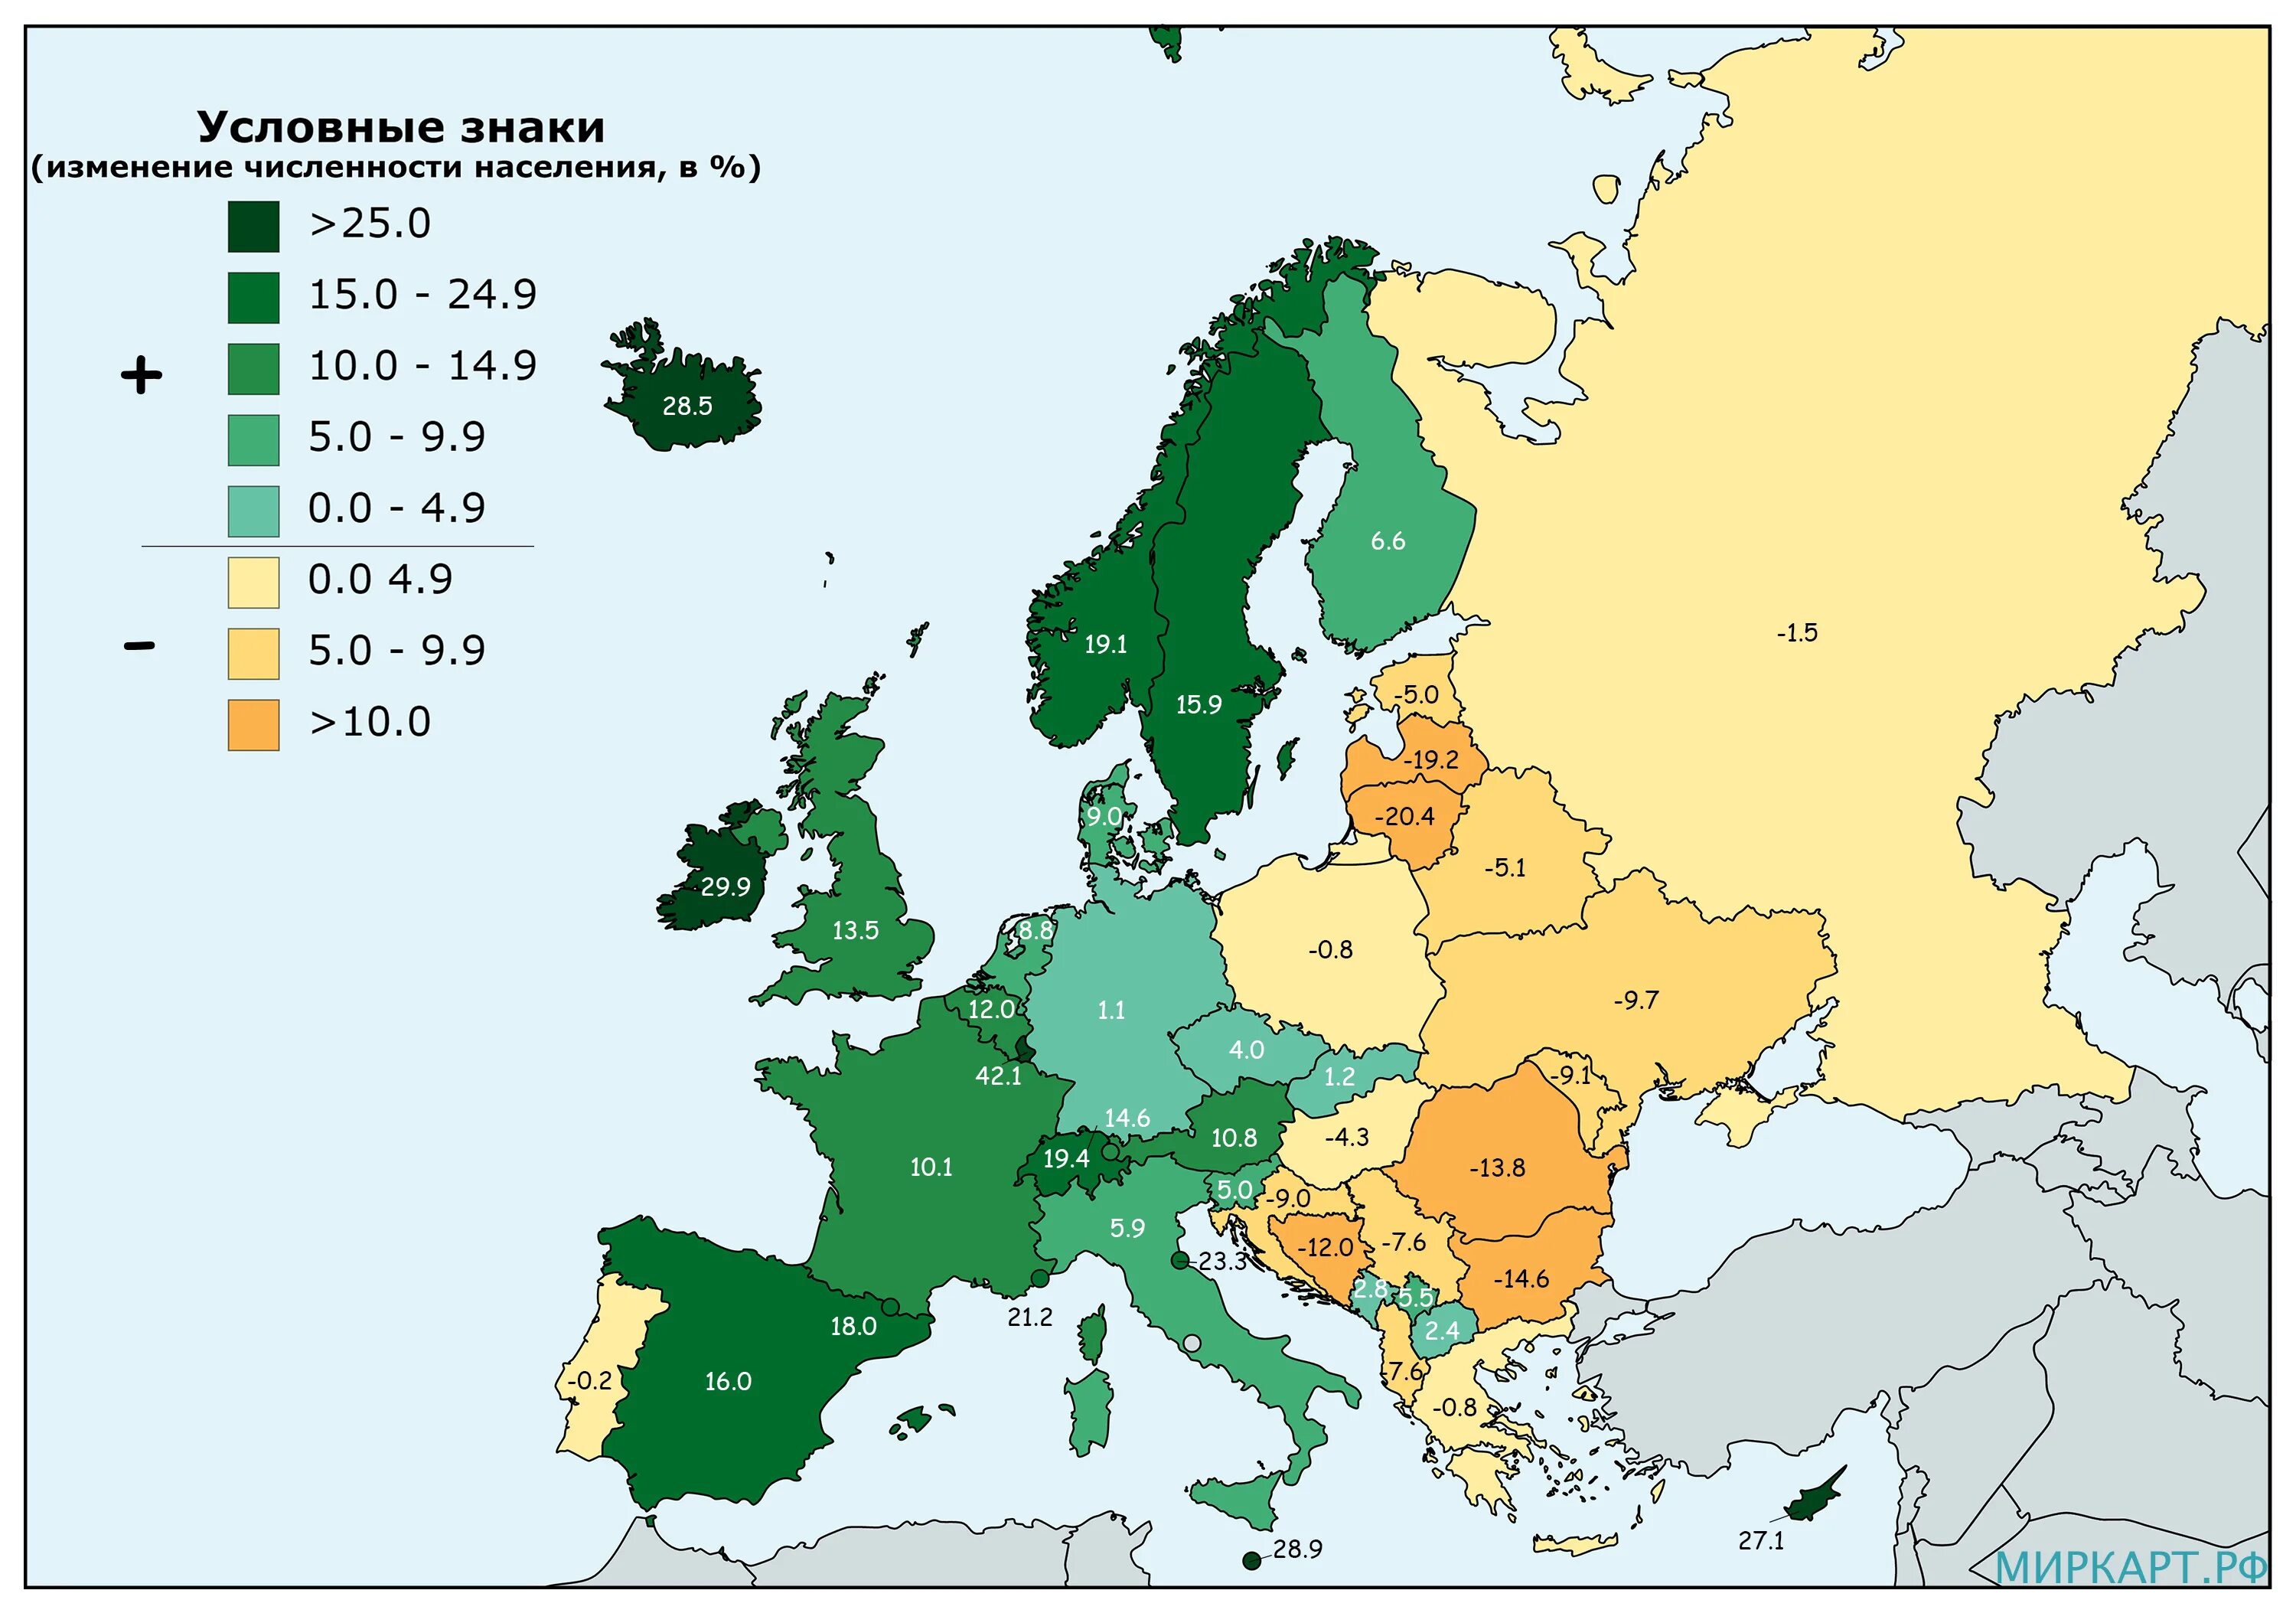 Все население европейских стран. Рост населения Европы. Плотность населения Европы. Численность европейских стран. Карта Европы с численностью населения.